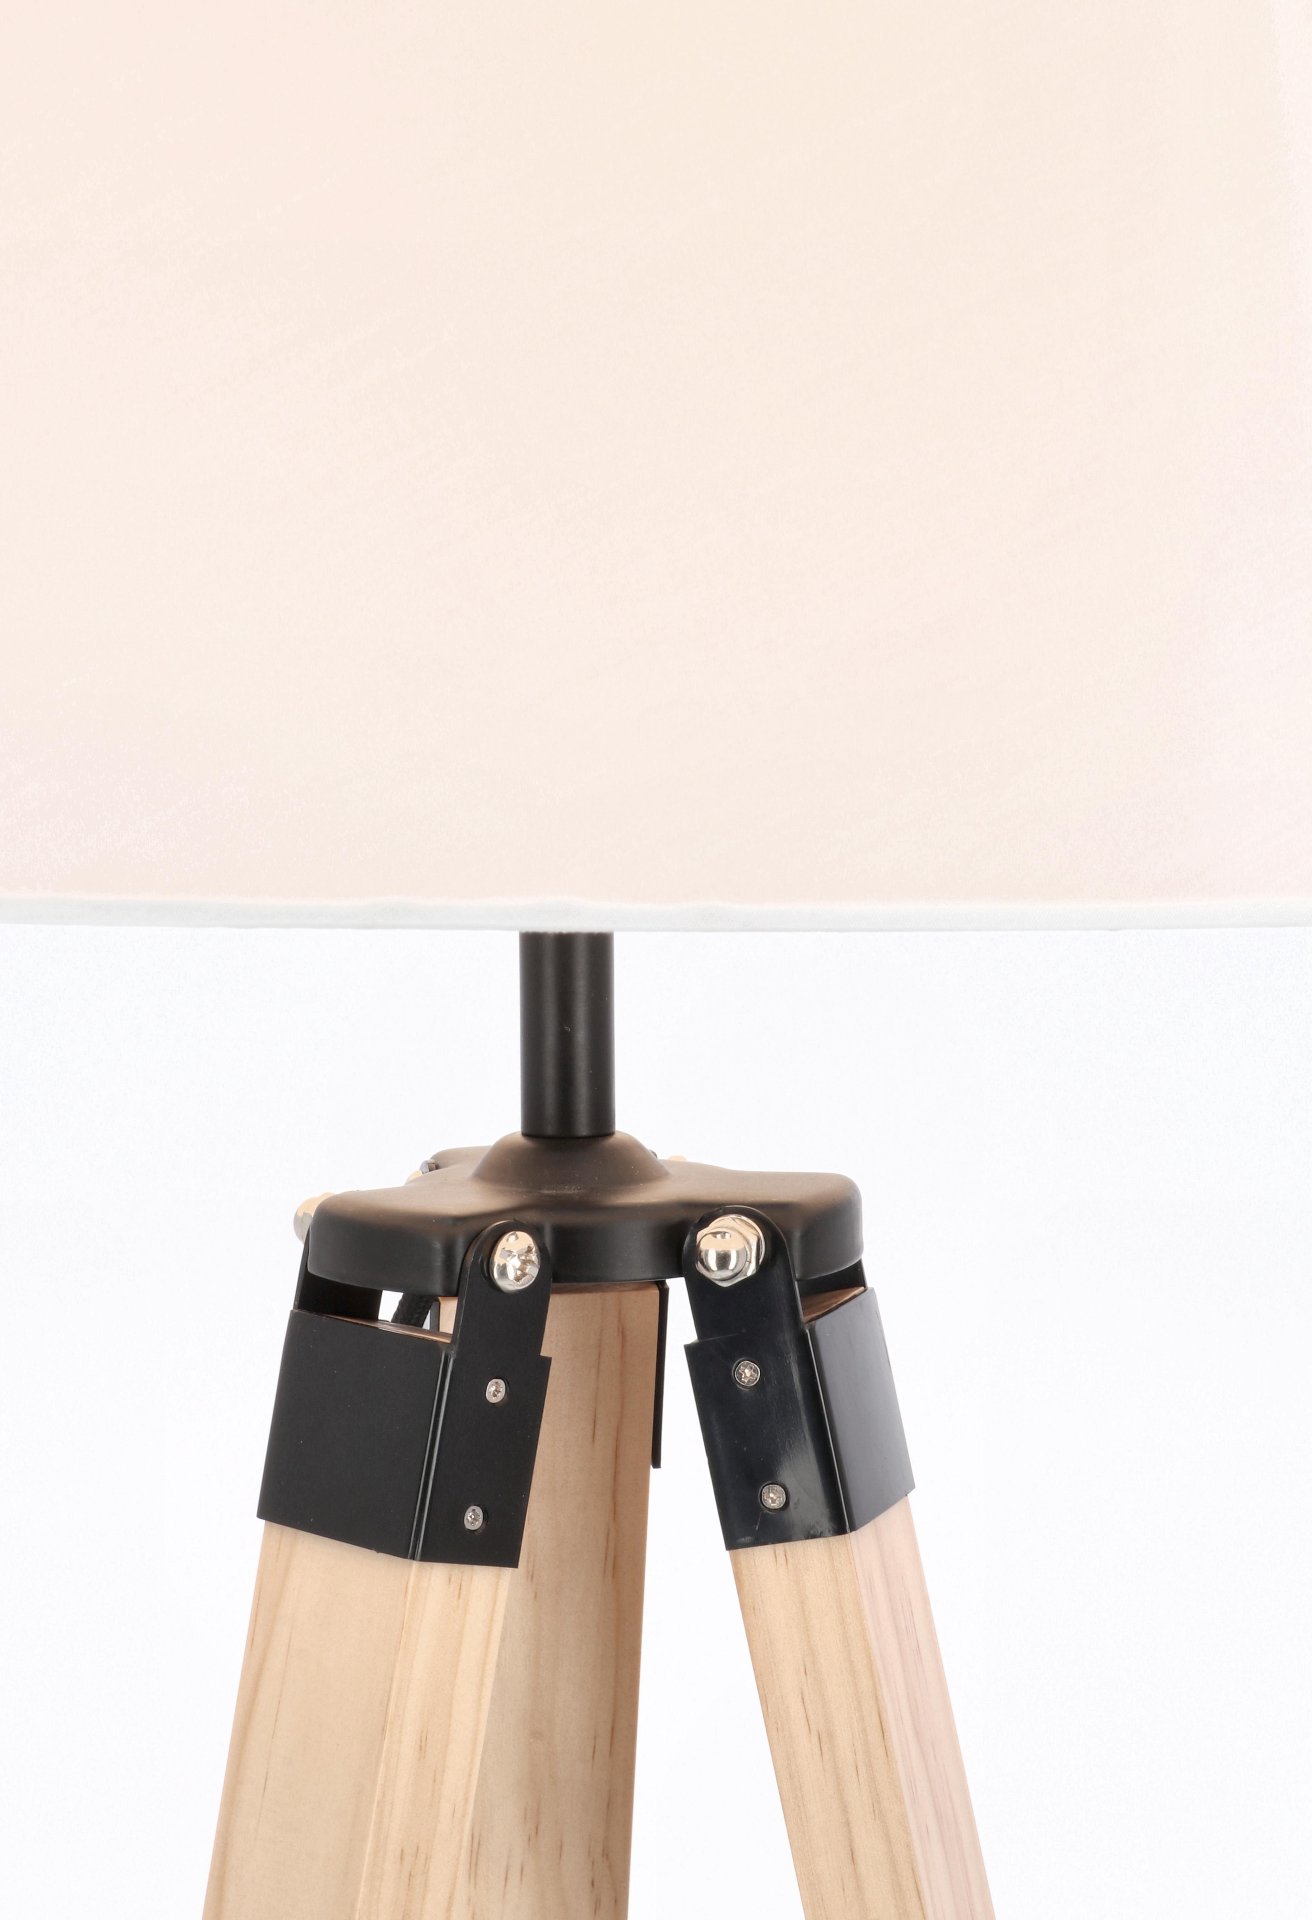 Die Stehleuchte Wood überzeugt mit ihrem klassischen Design. Gefertigt wurde sie aus Kiefernholz, welches einen natürlichen Farbton besitzt. Der Lampenschirm ist aus Baumwolle, welcher einen weißen Farbton besitzt. Die Lampe besitzt eine Höhe von 150 cm.